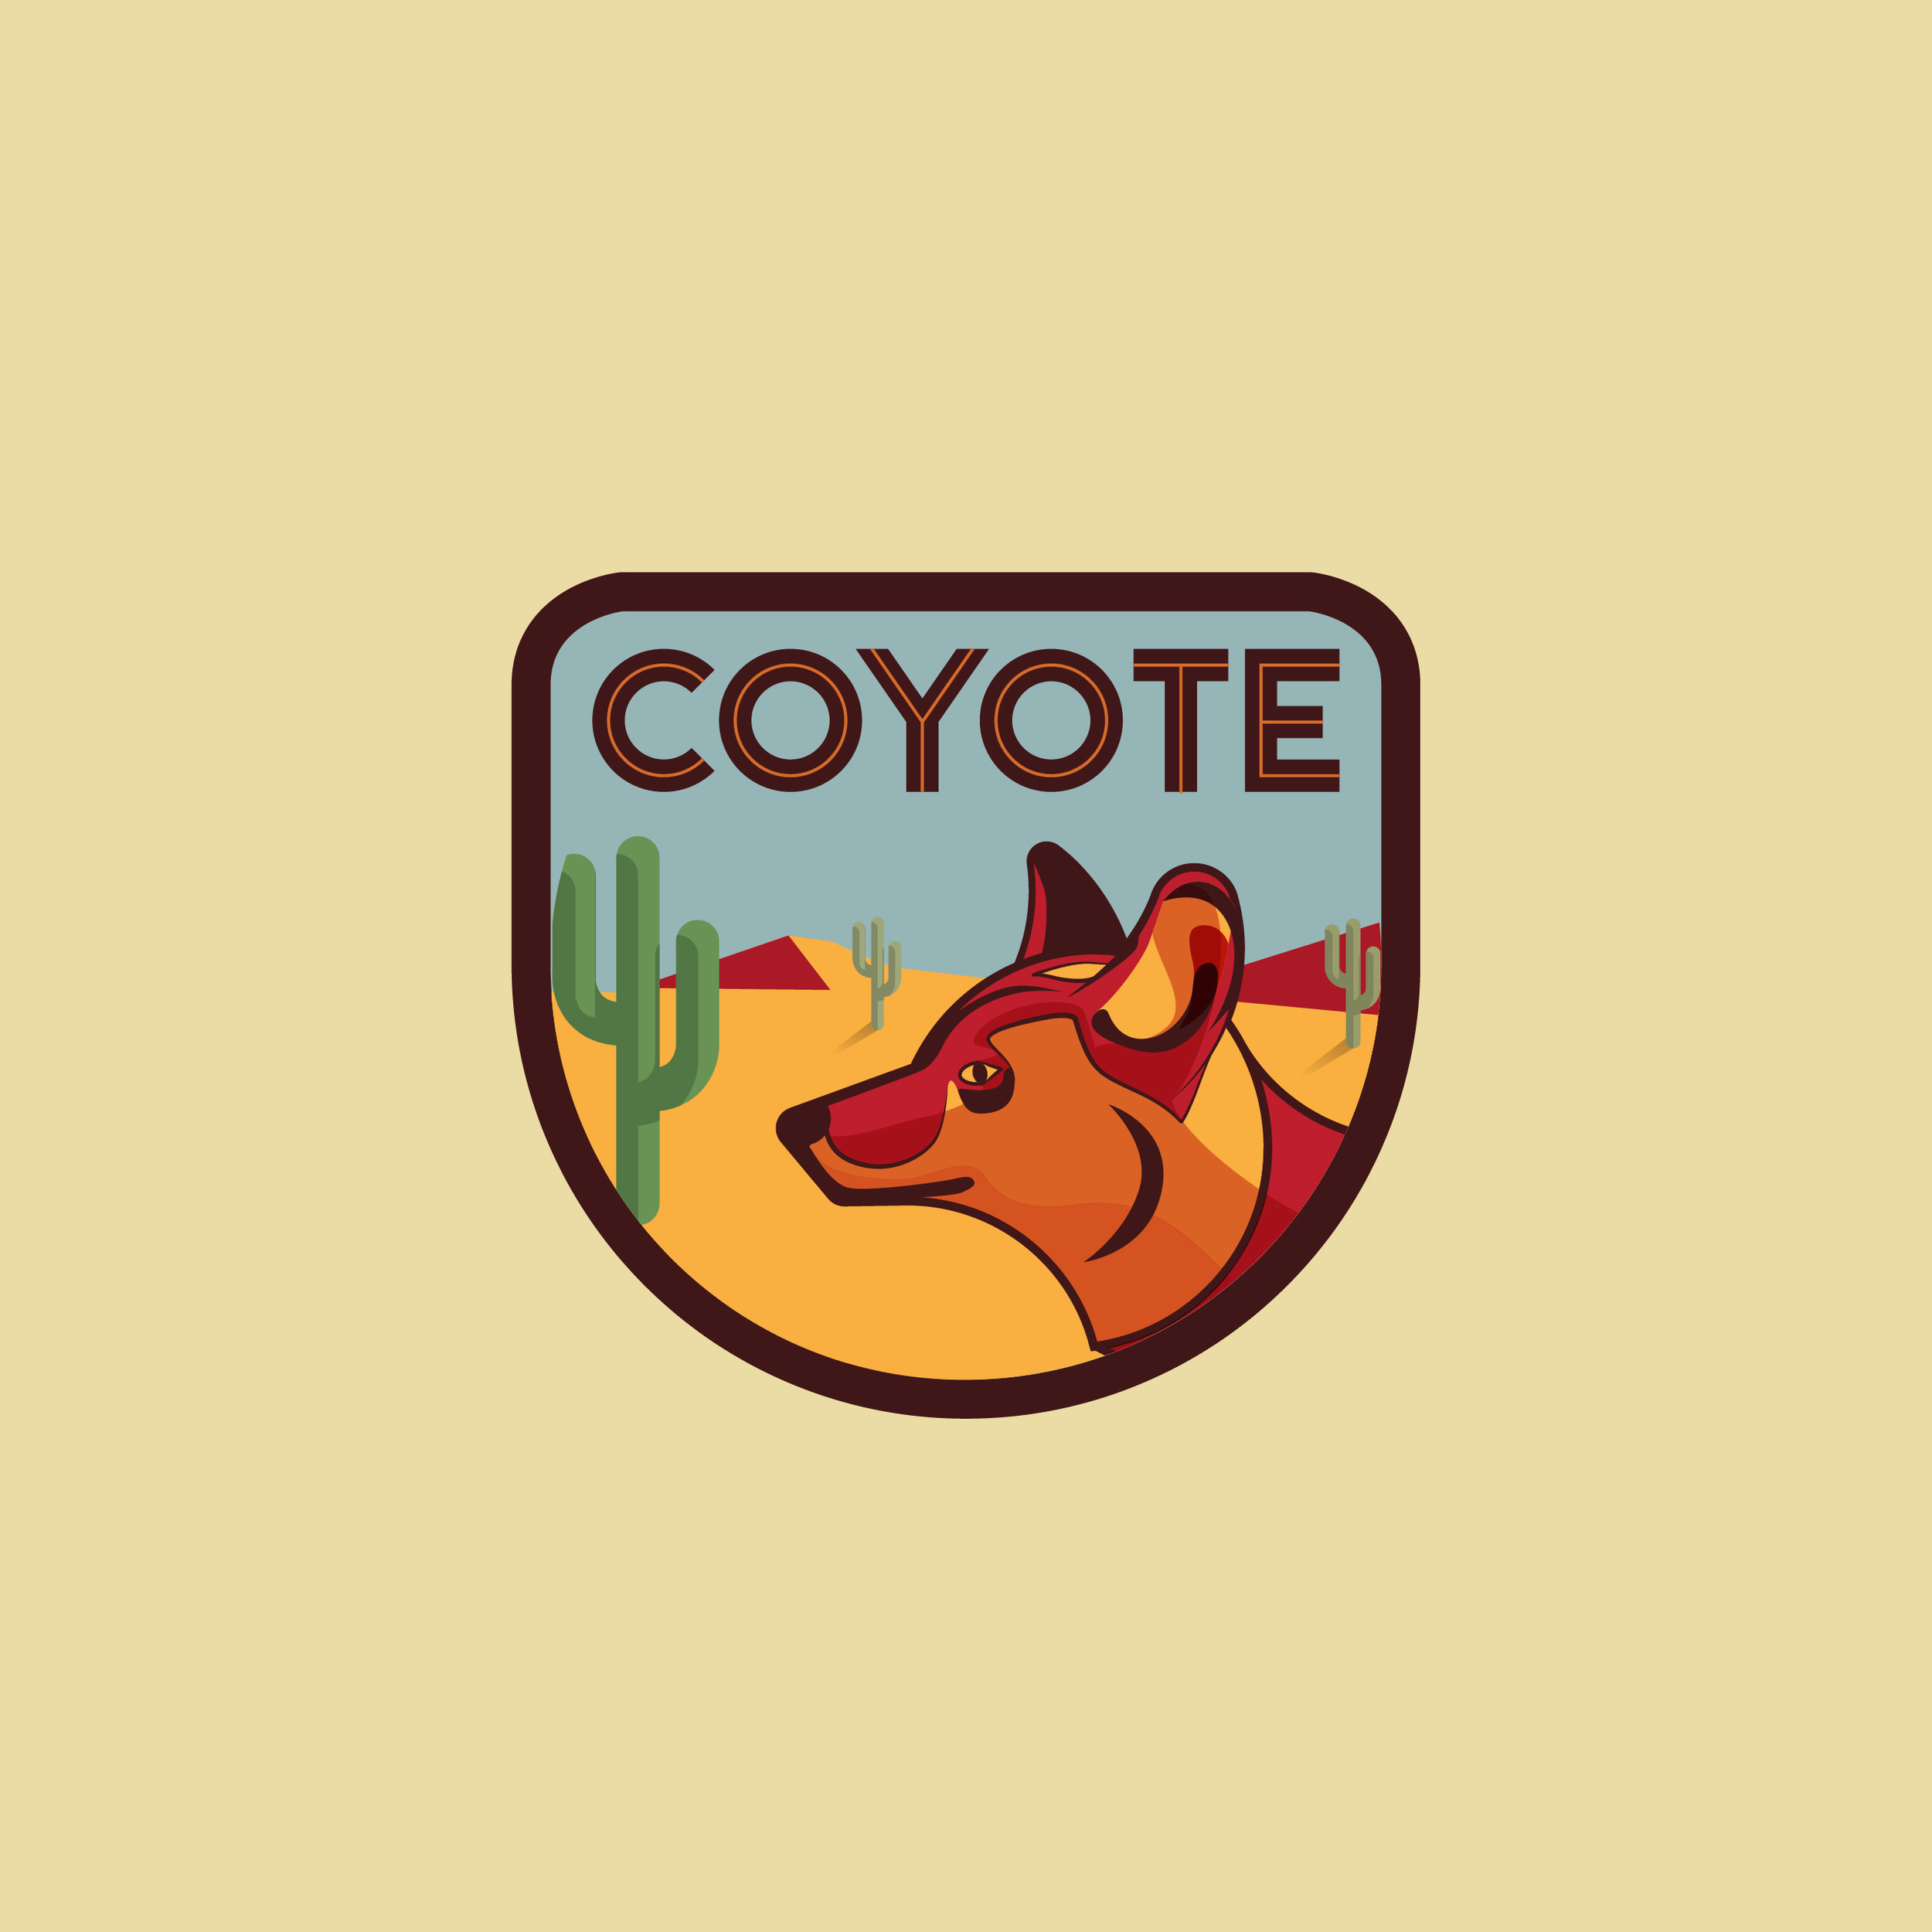 Coyote_Logos-01.jpg